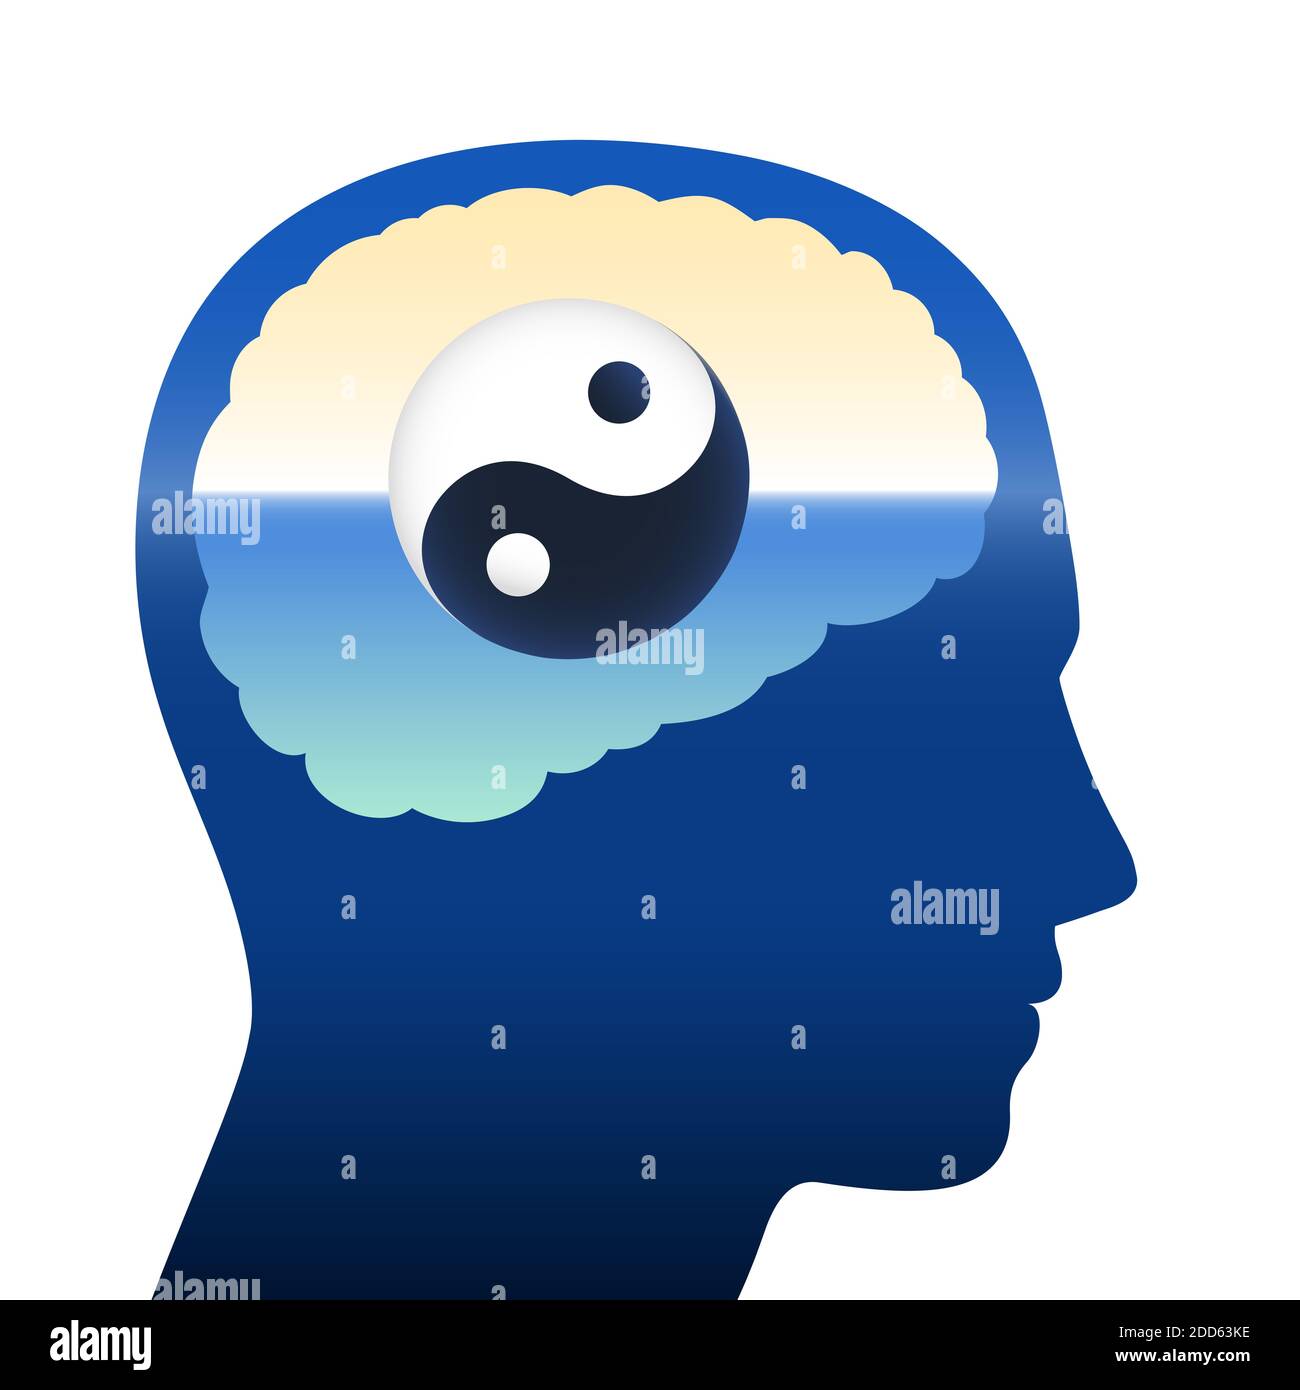 Yin Yang dans le cerveau humain, symbole de l'équilibre, de l'harmonie, de la relaxation, de la méditation, de la tranquillité, de la spiritualité, de la sérénité, du silence et de la santé mentale. Banque D'Images